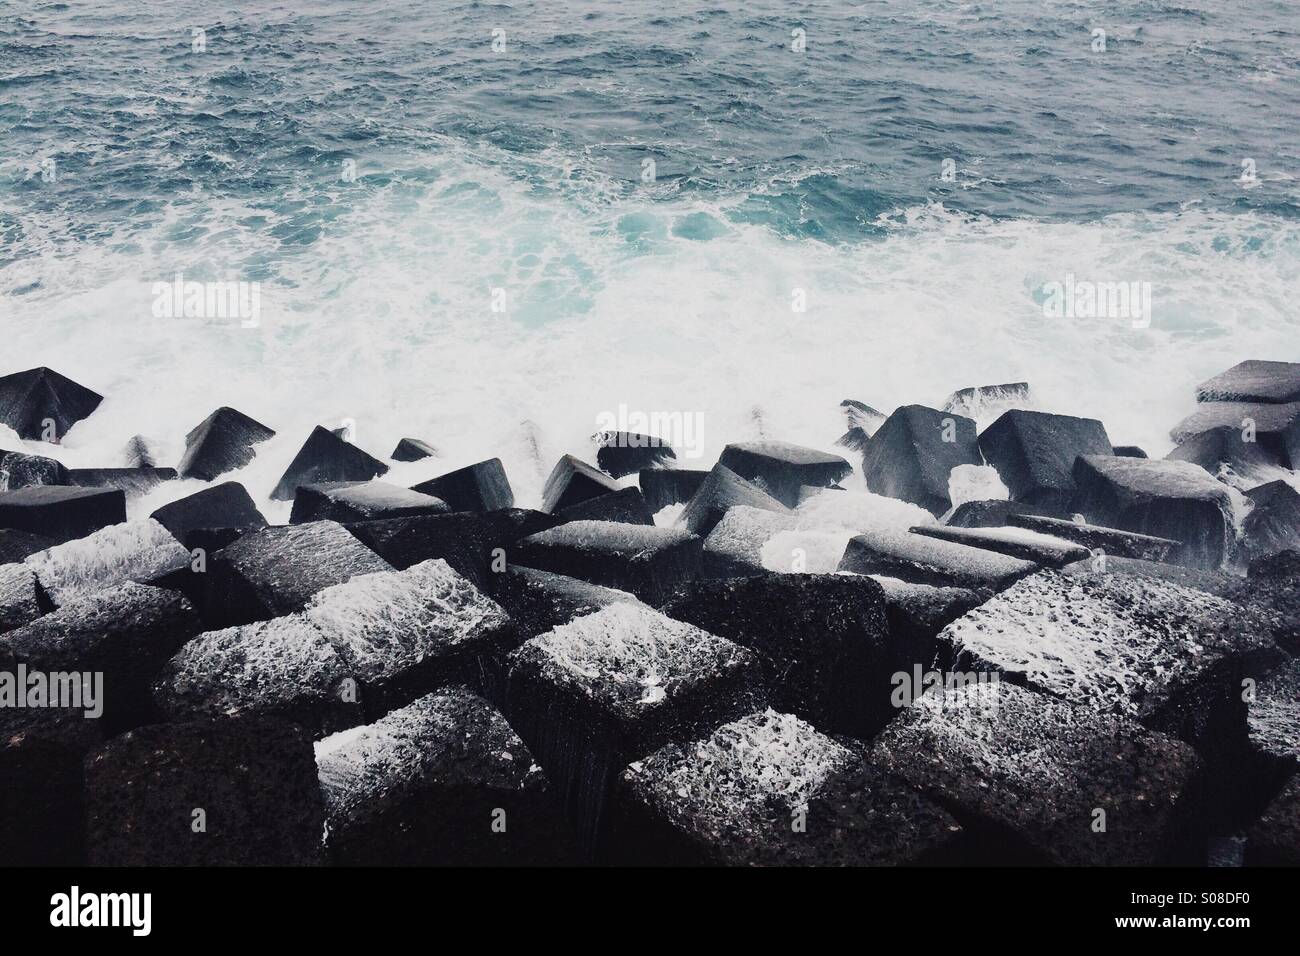 ocean spray coating cube rocks Stock Photo